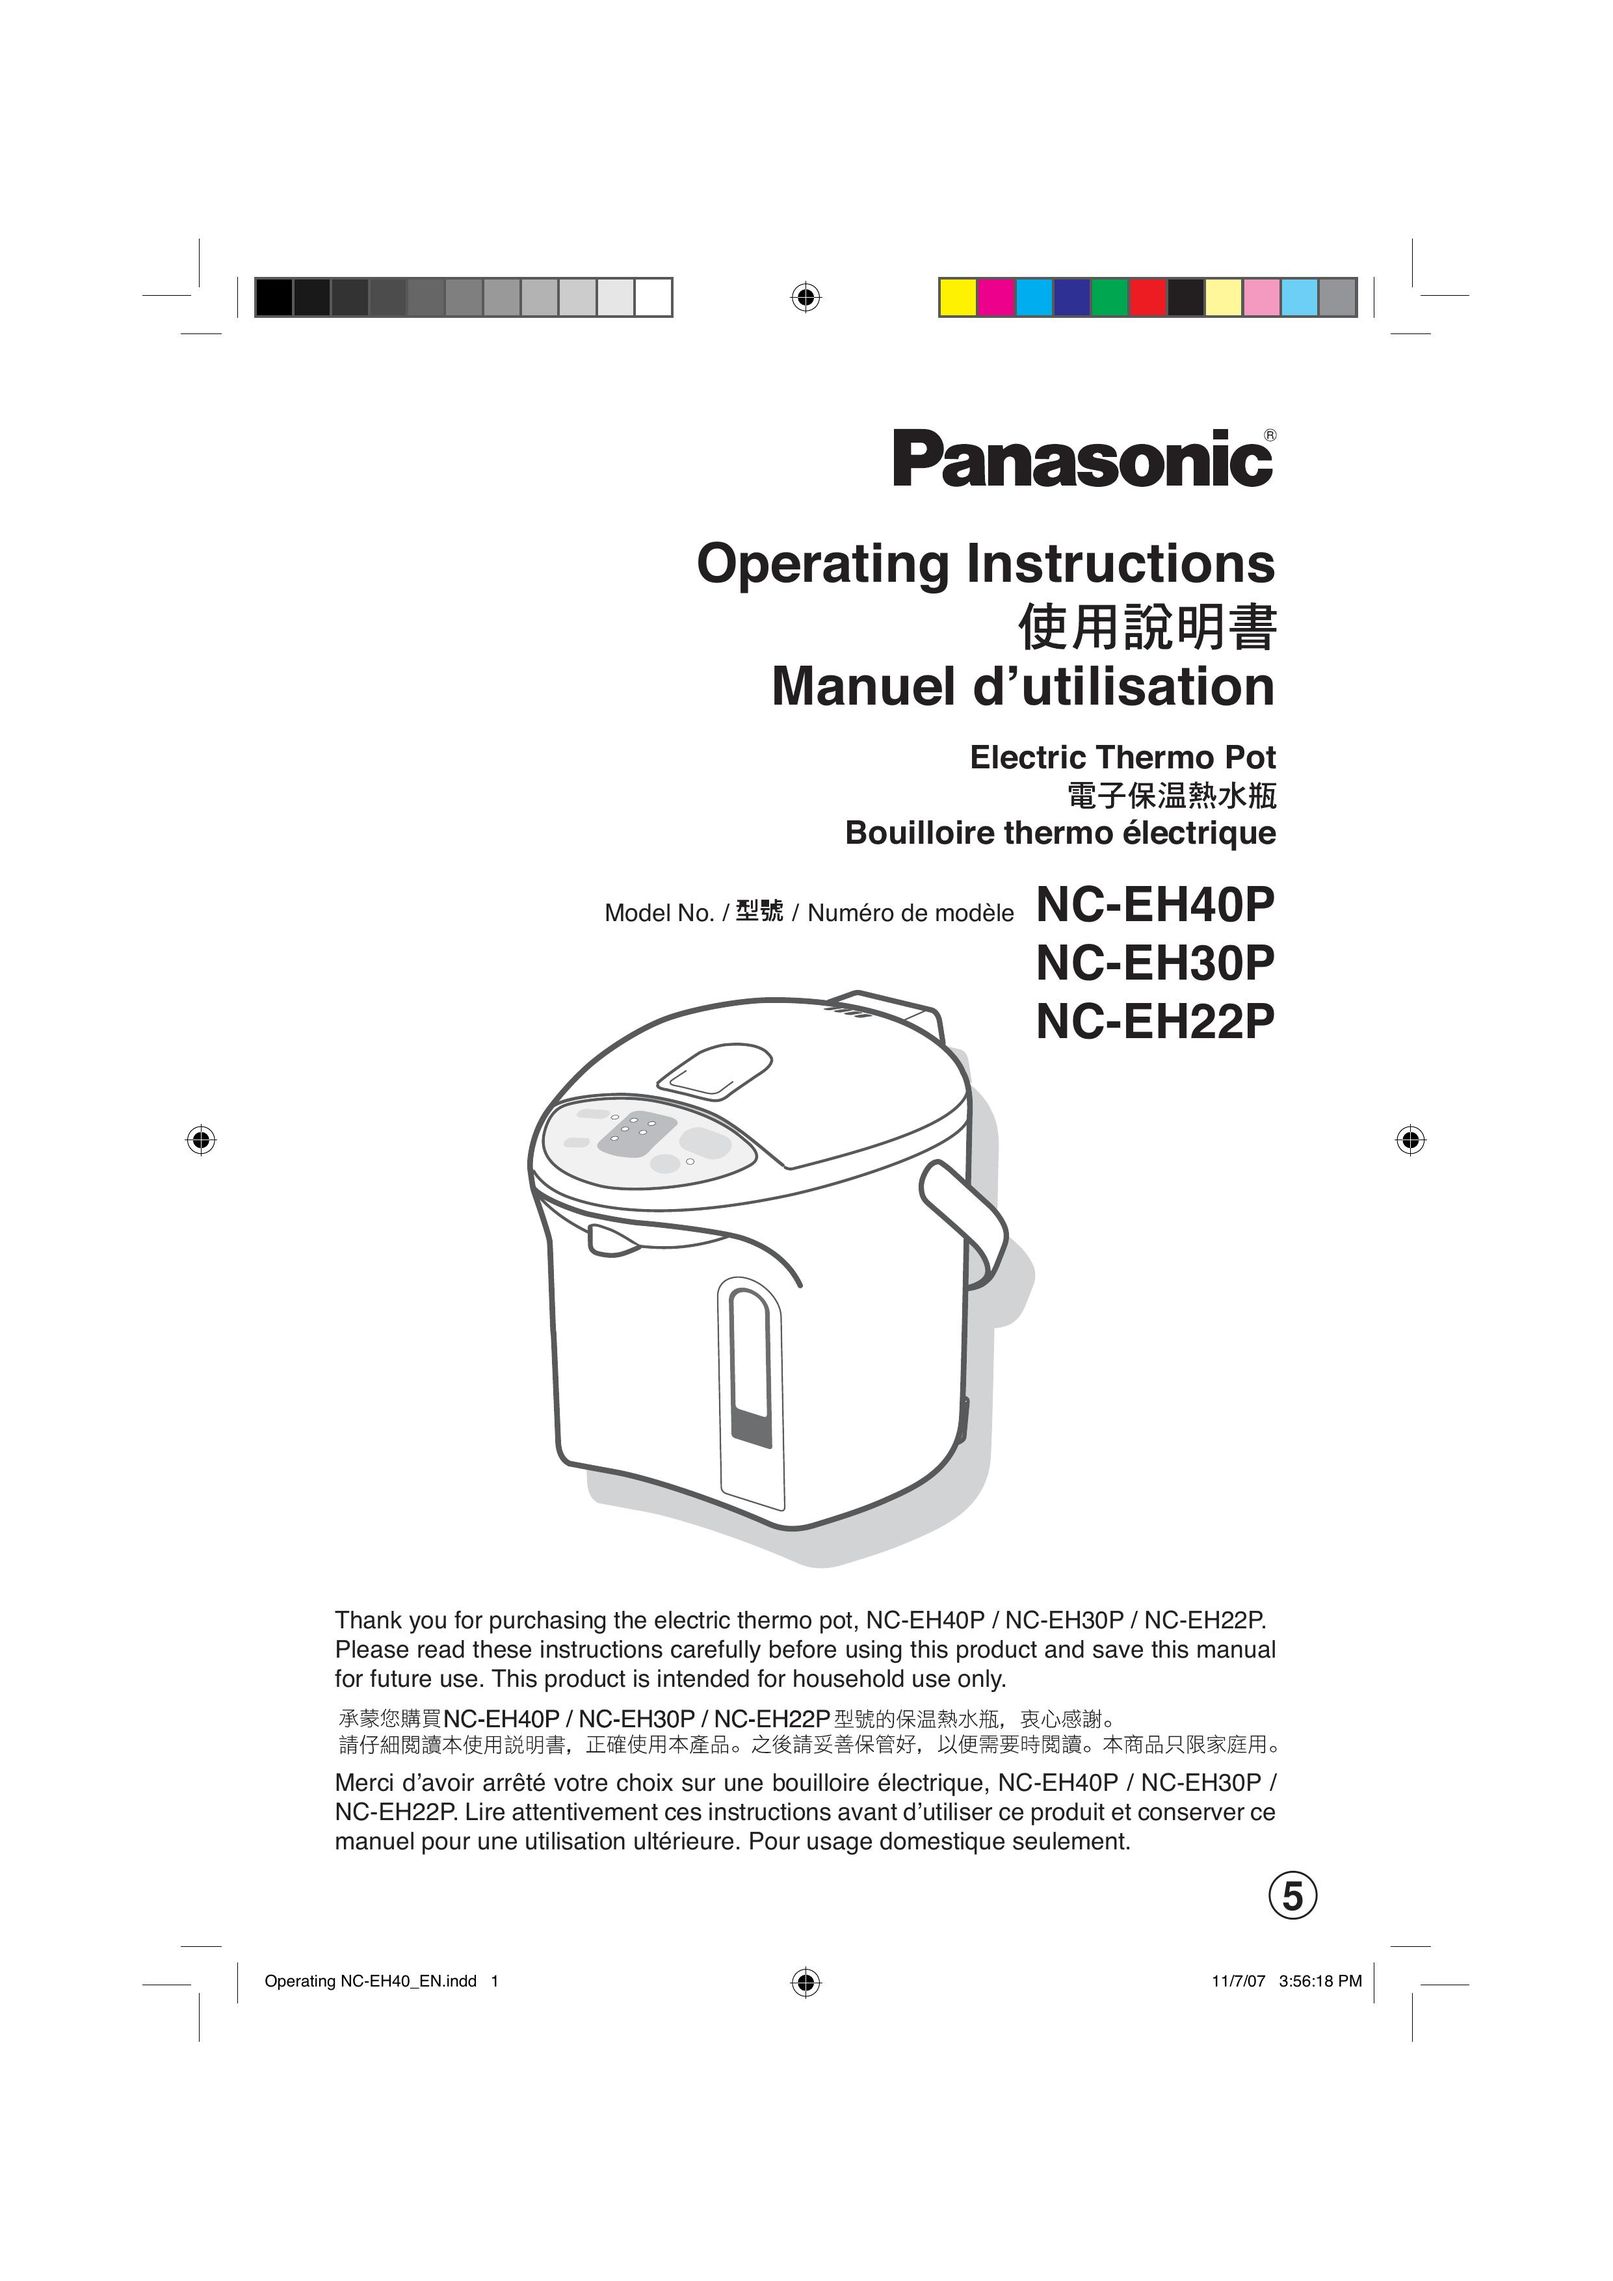 Panasonic NC-EH40P Hot Beverage Maker User Manual